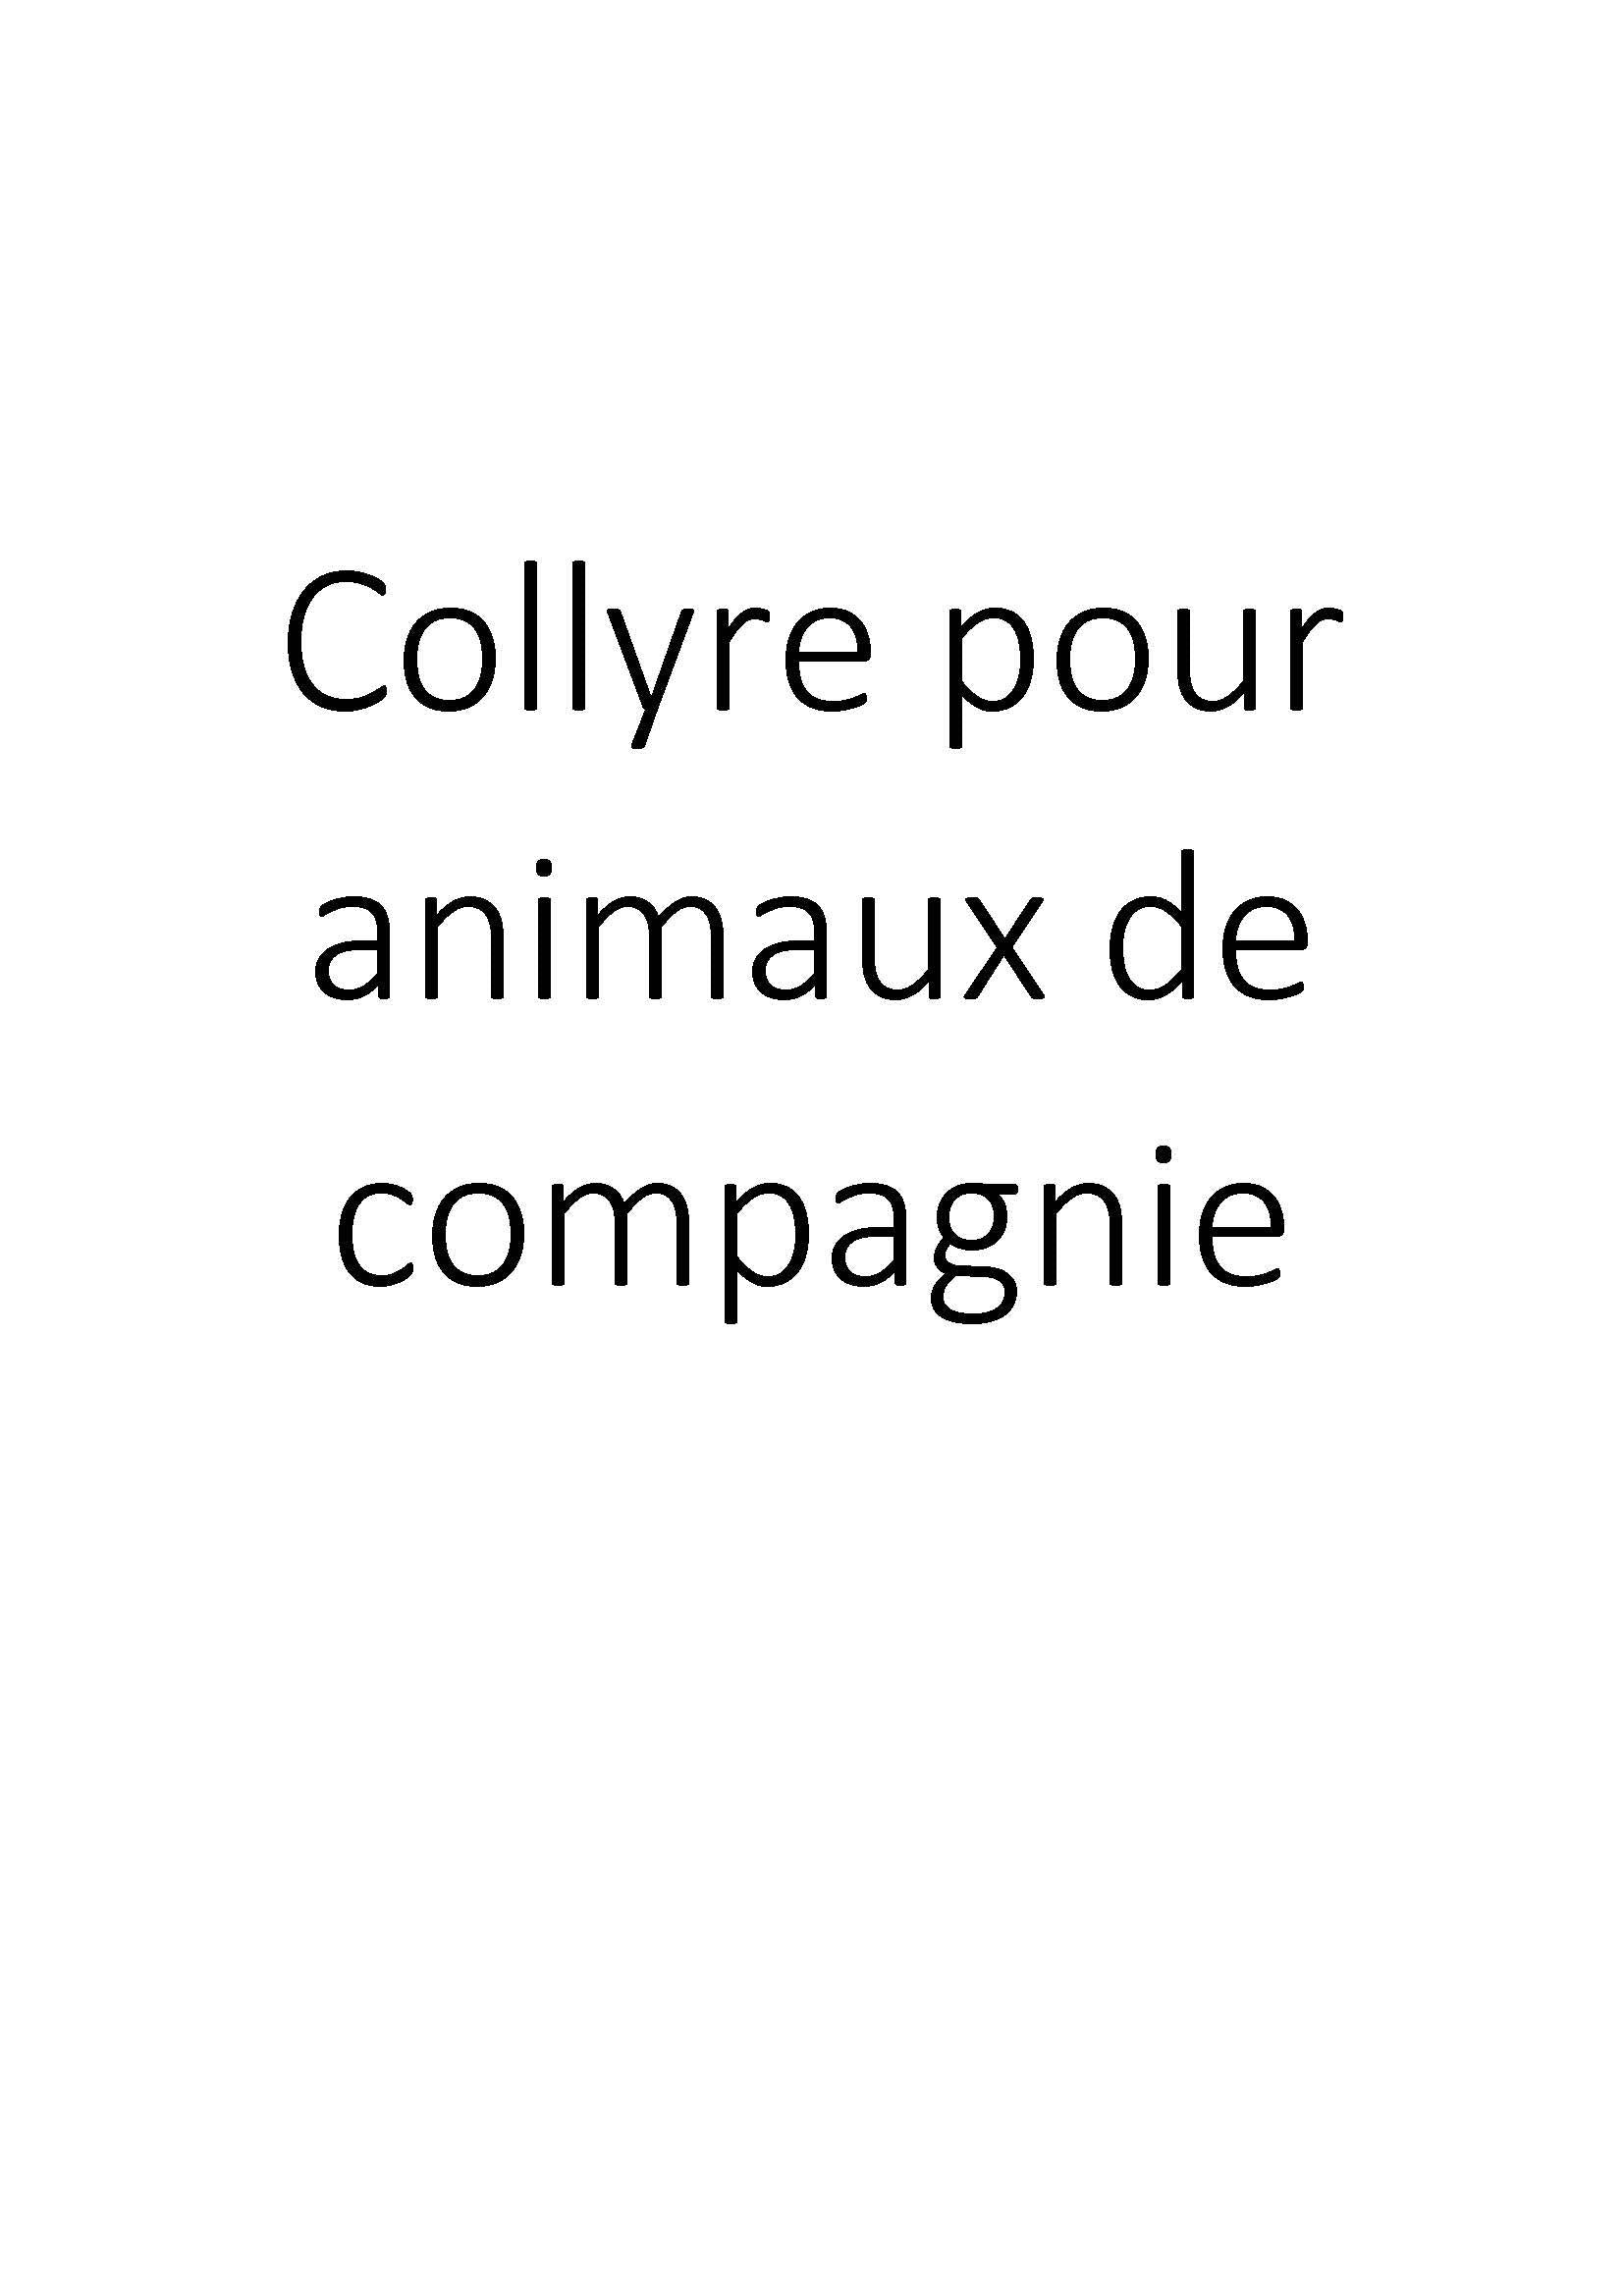 Collyre pour animaux de compagnie clicktofournisseur.com